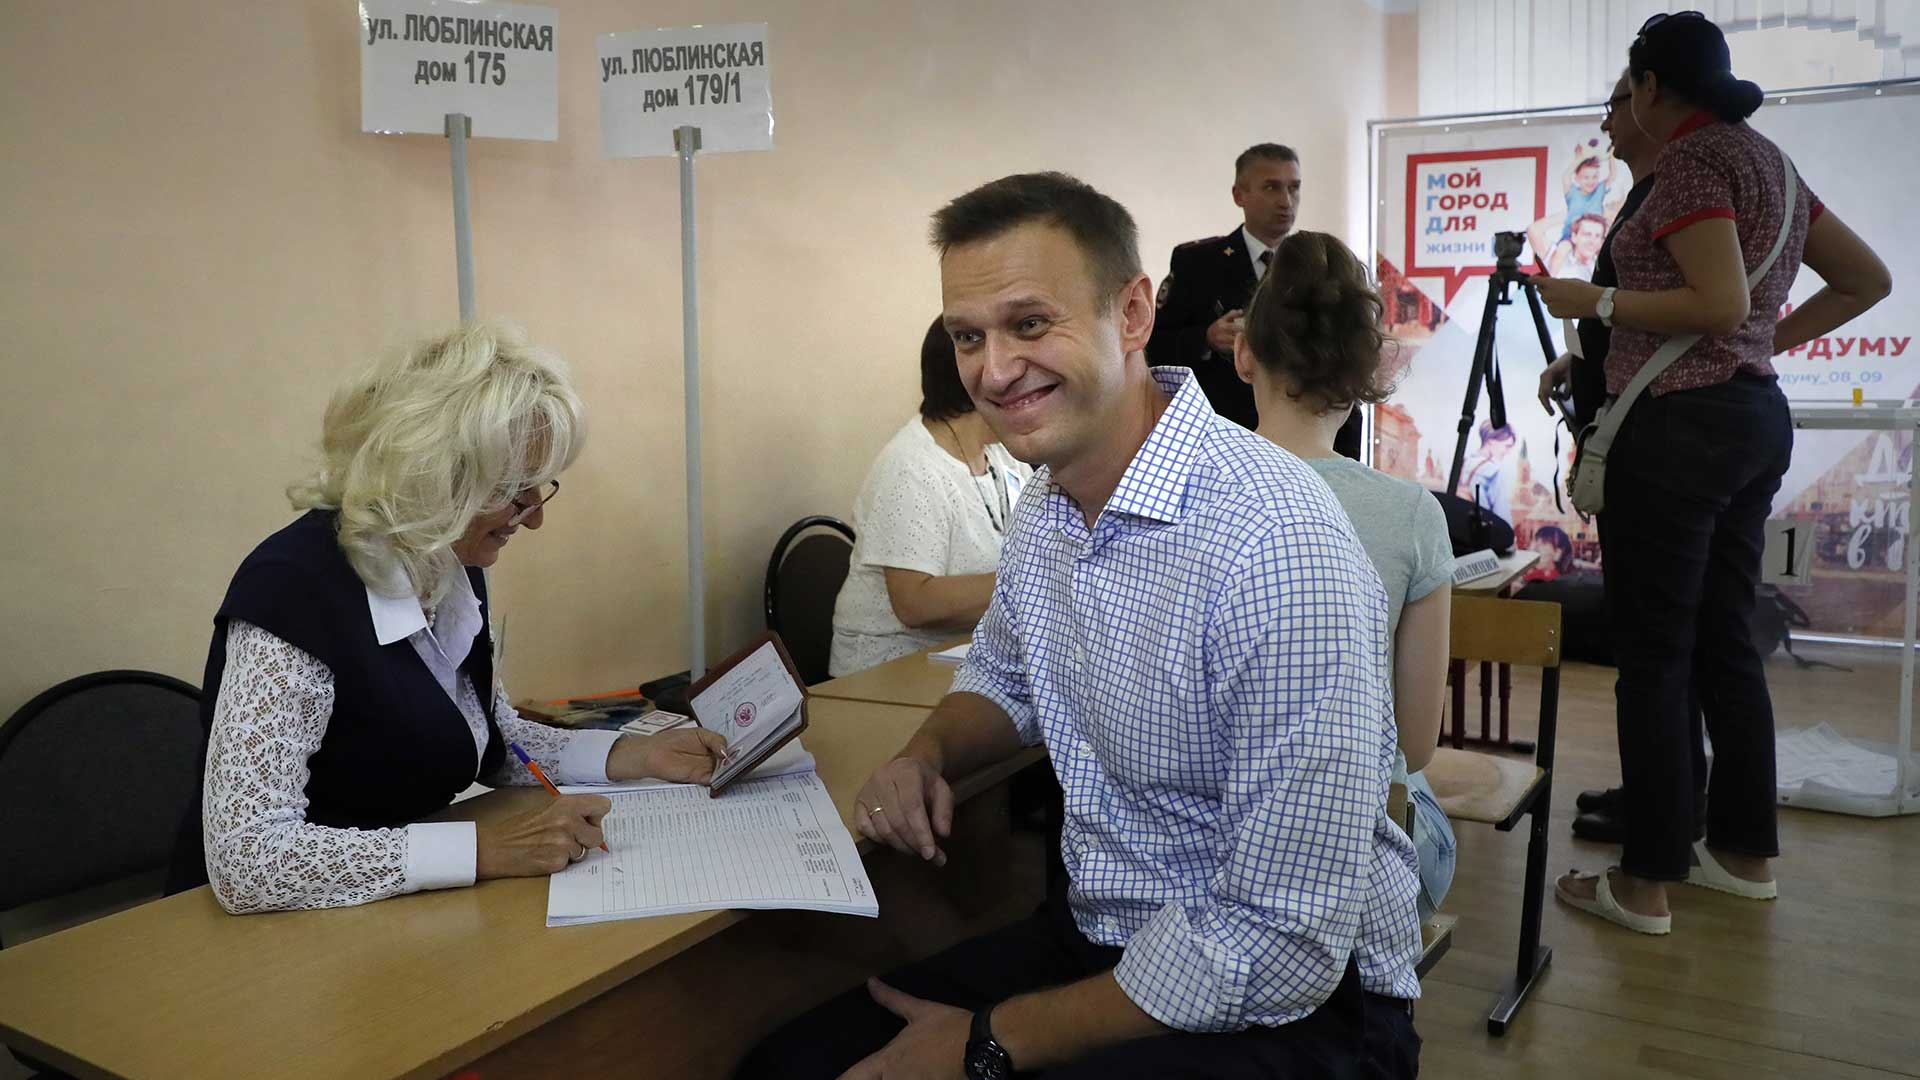 La oposición logra 20 escaños en Moscú con el "voto inteligente" de Navalny